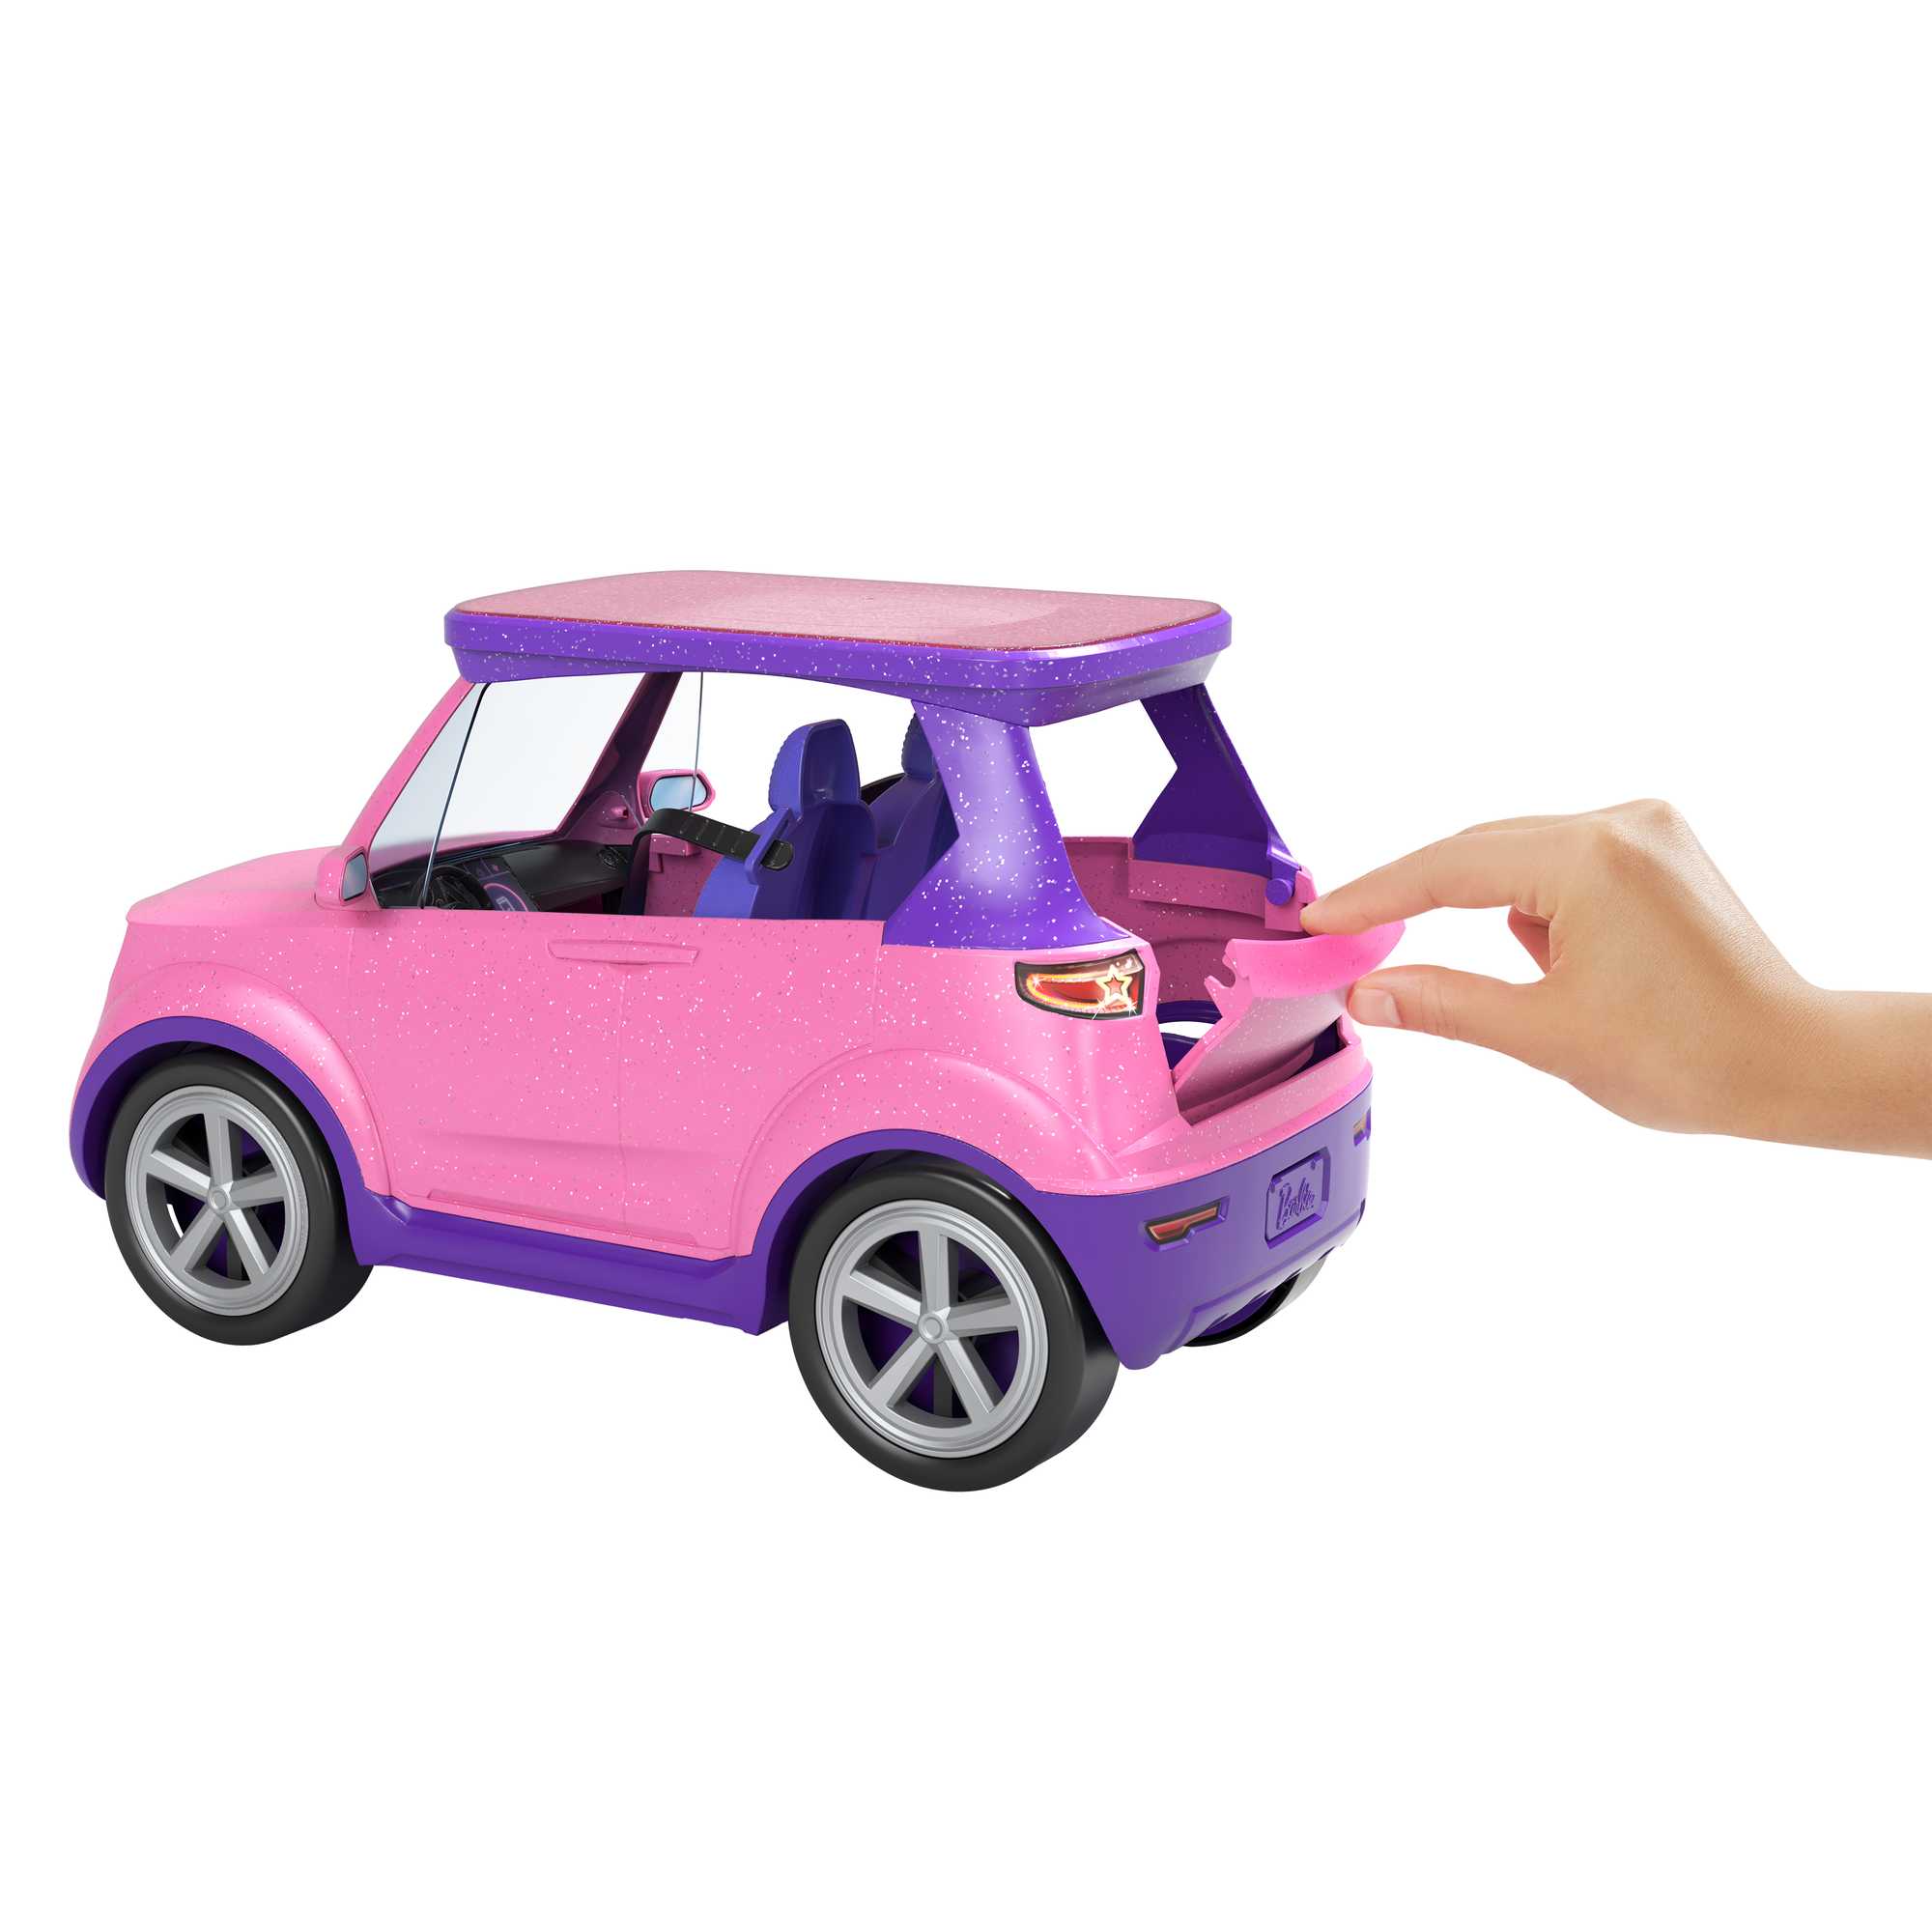 Barbie Big City Big Dreams Vehicle | Mattel